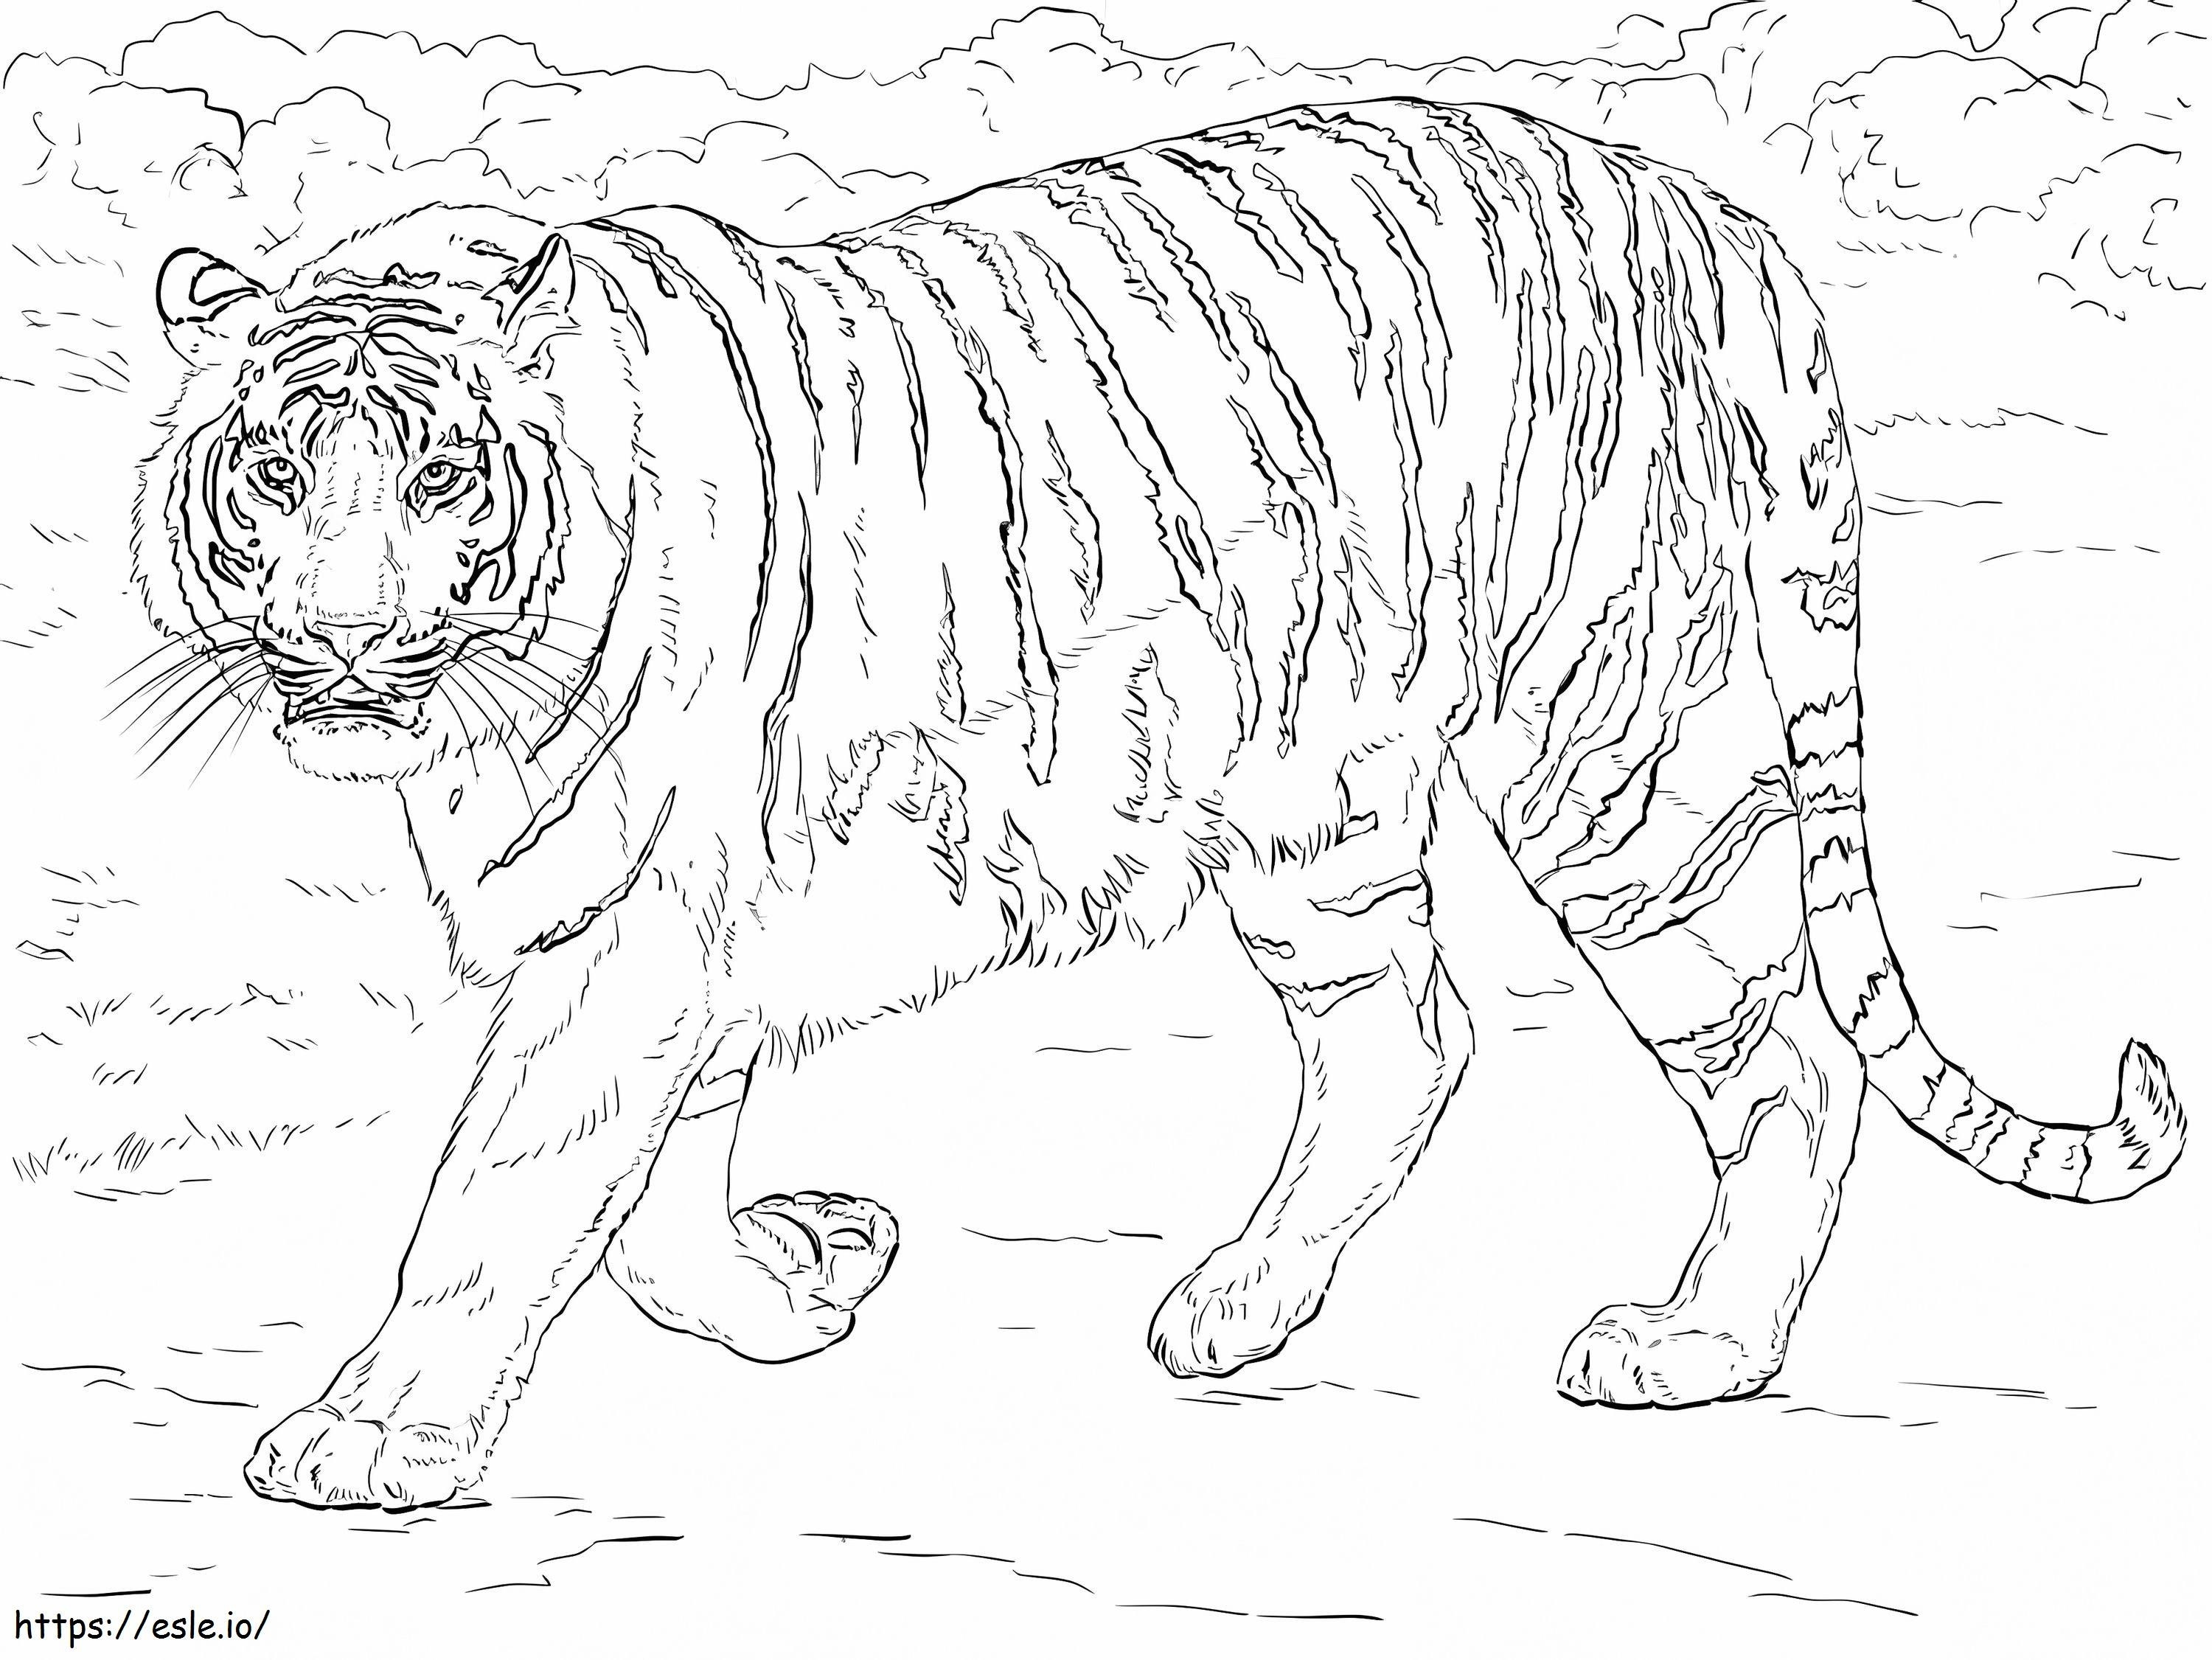 Tigre de Bengala realista para colorear